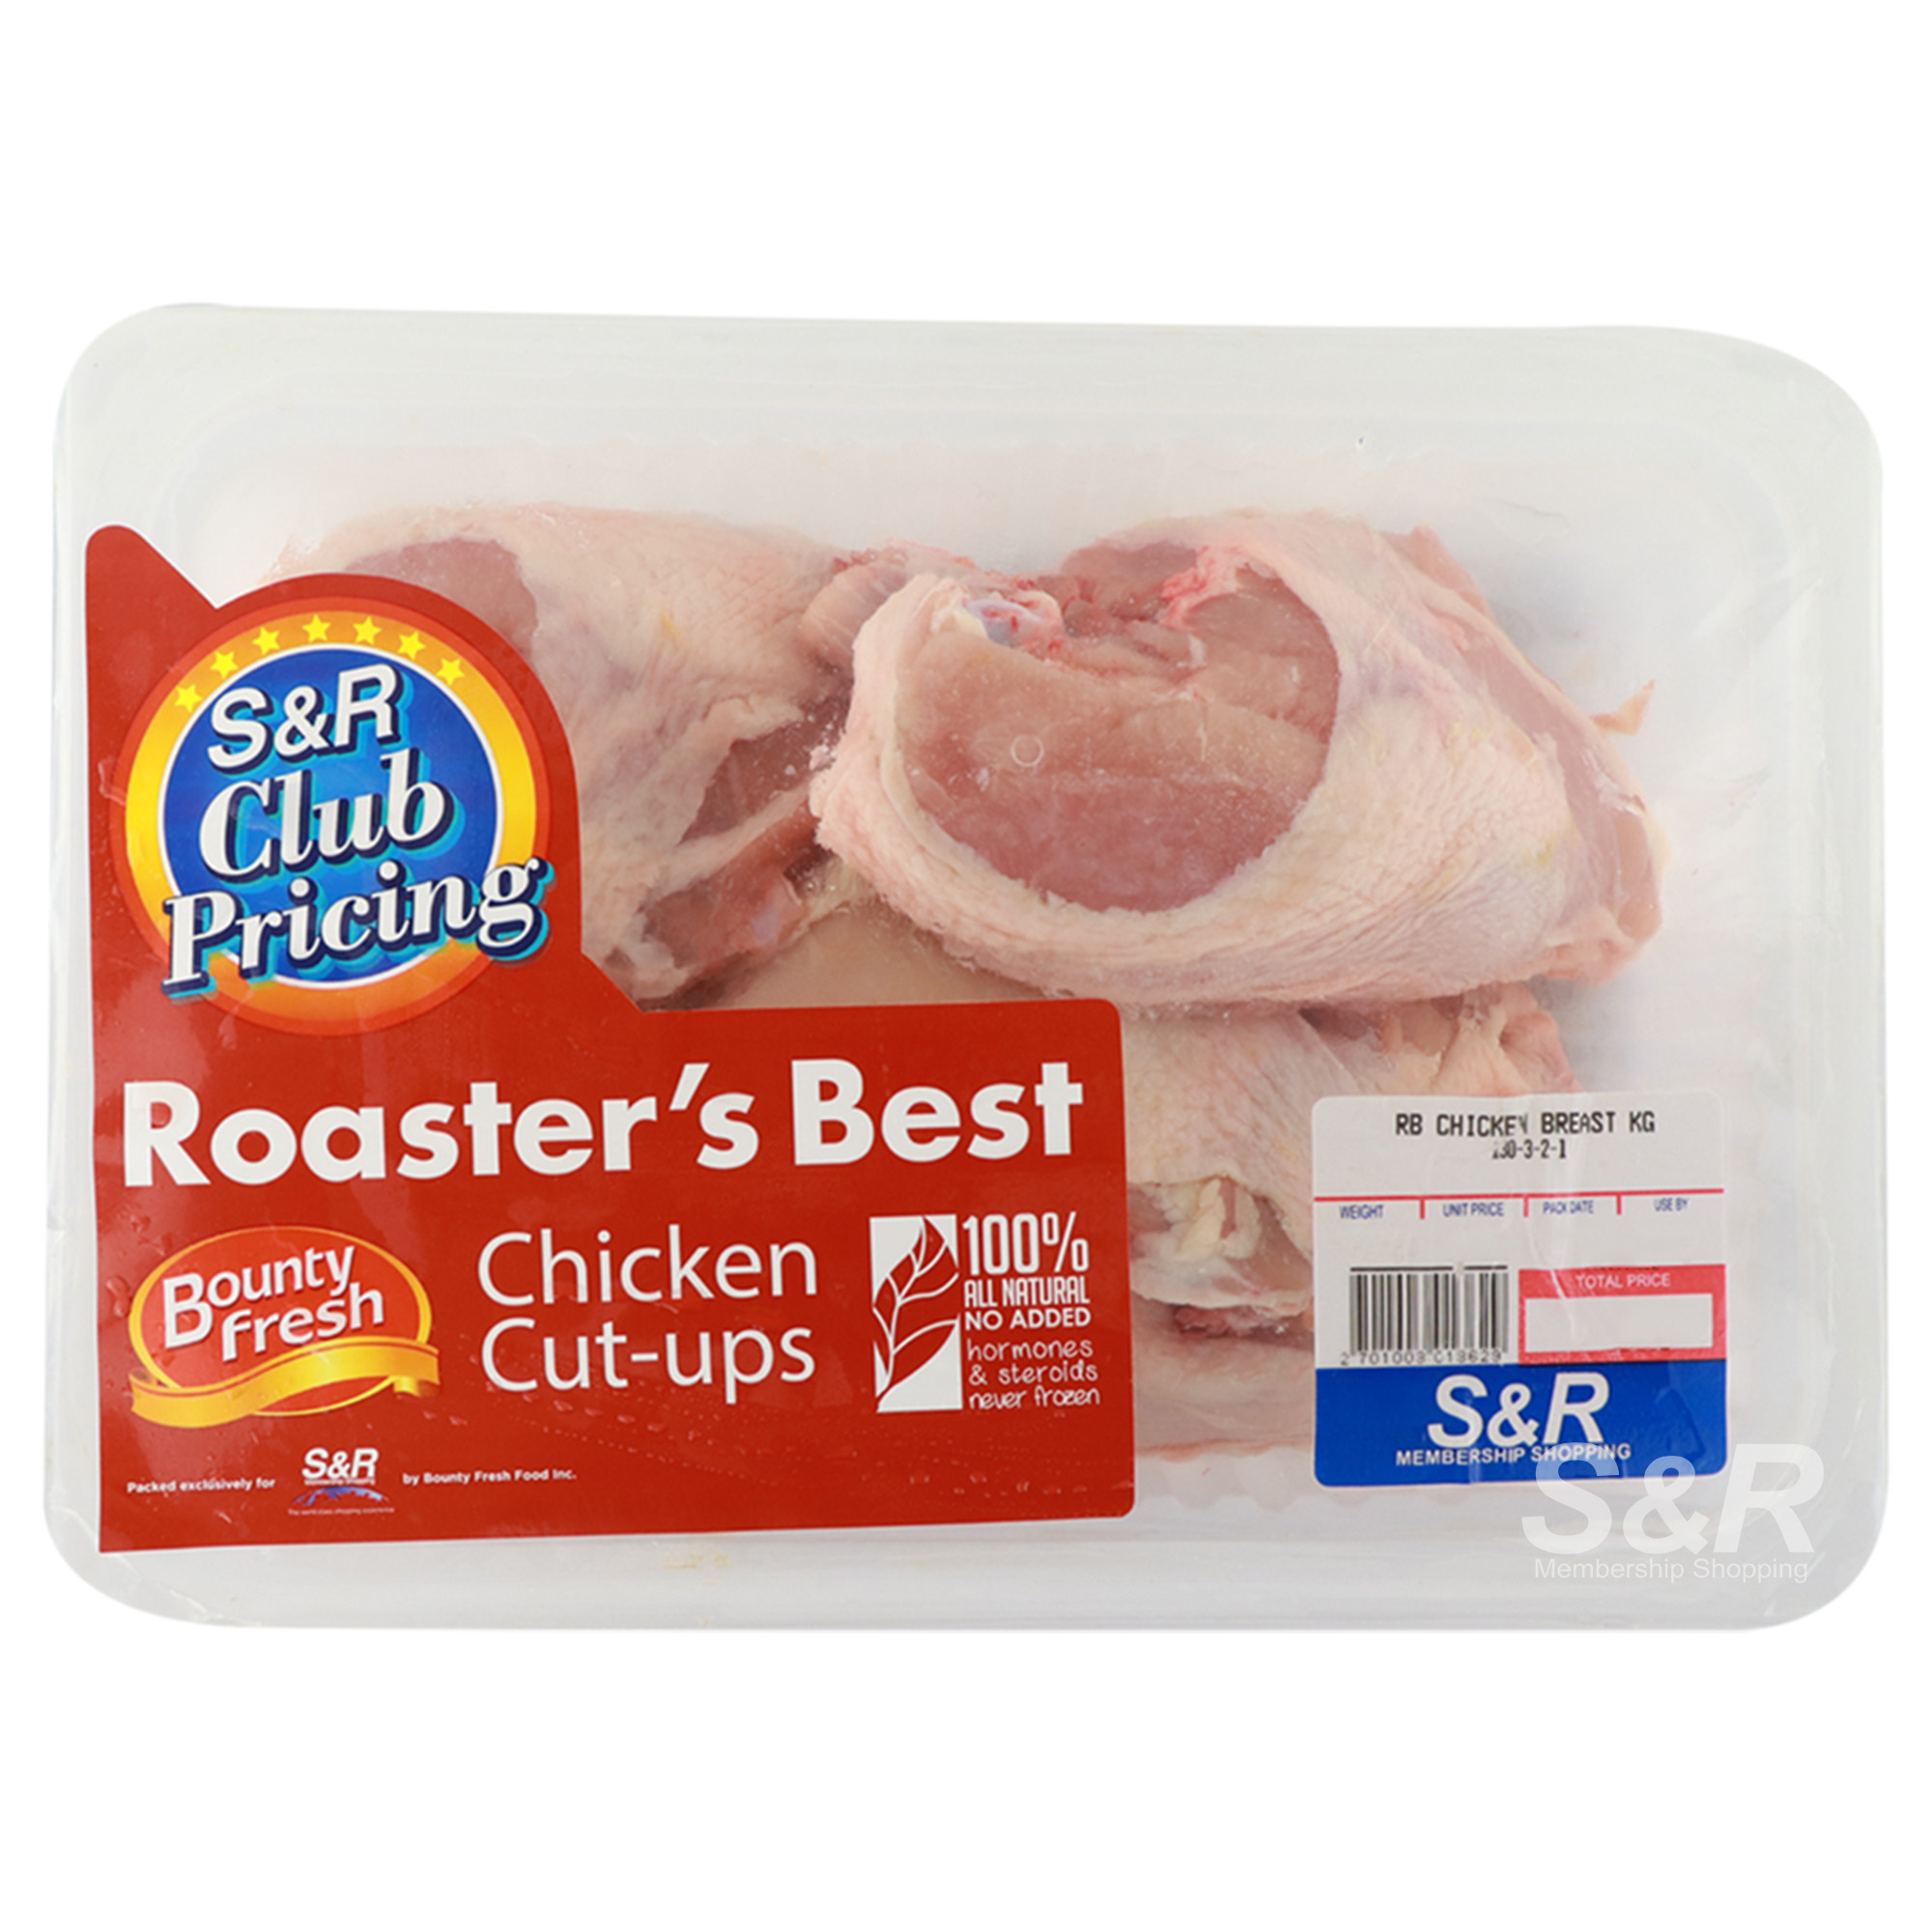 Roaster's Best Chicken Breast  Cut-ups approx. 2.5kg